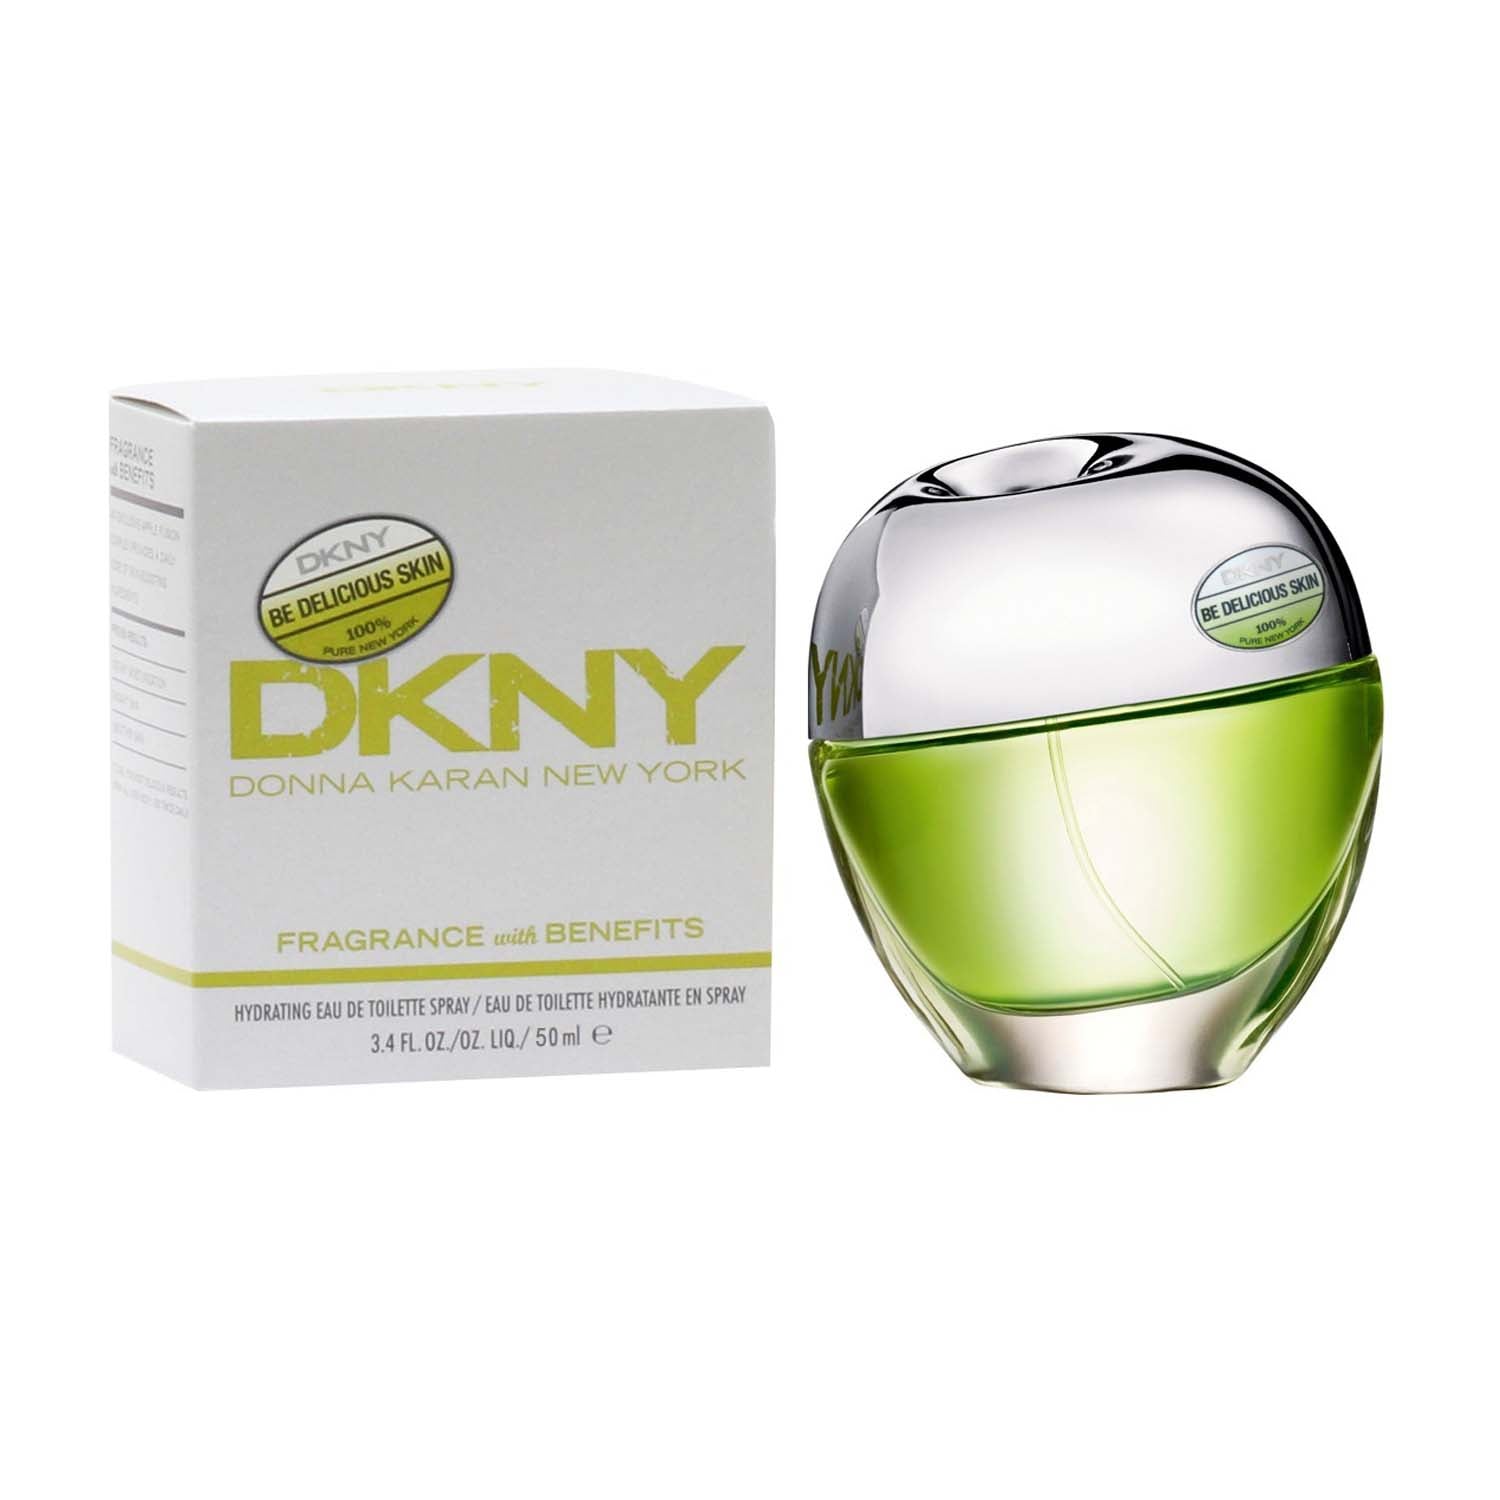 DKNY Be Delicious Skin Eau de Toilette Spray 50ml